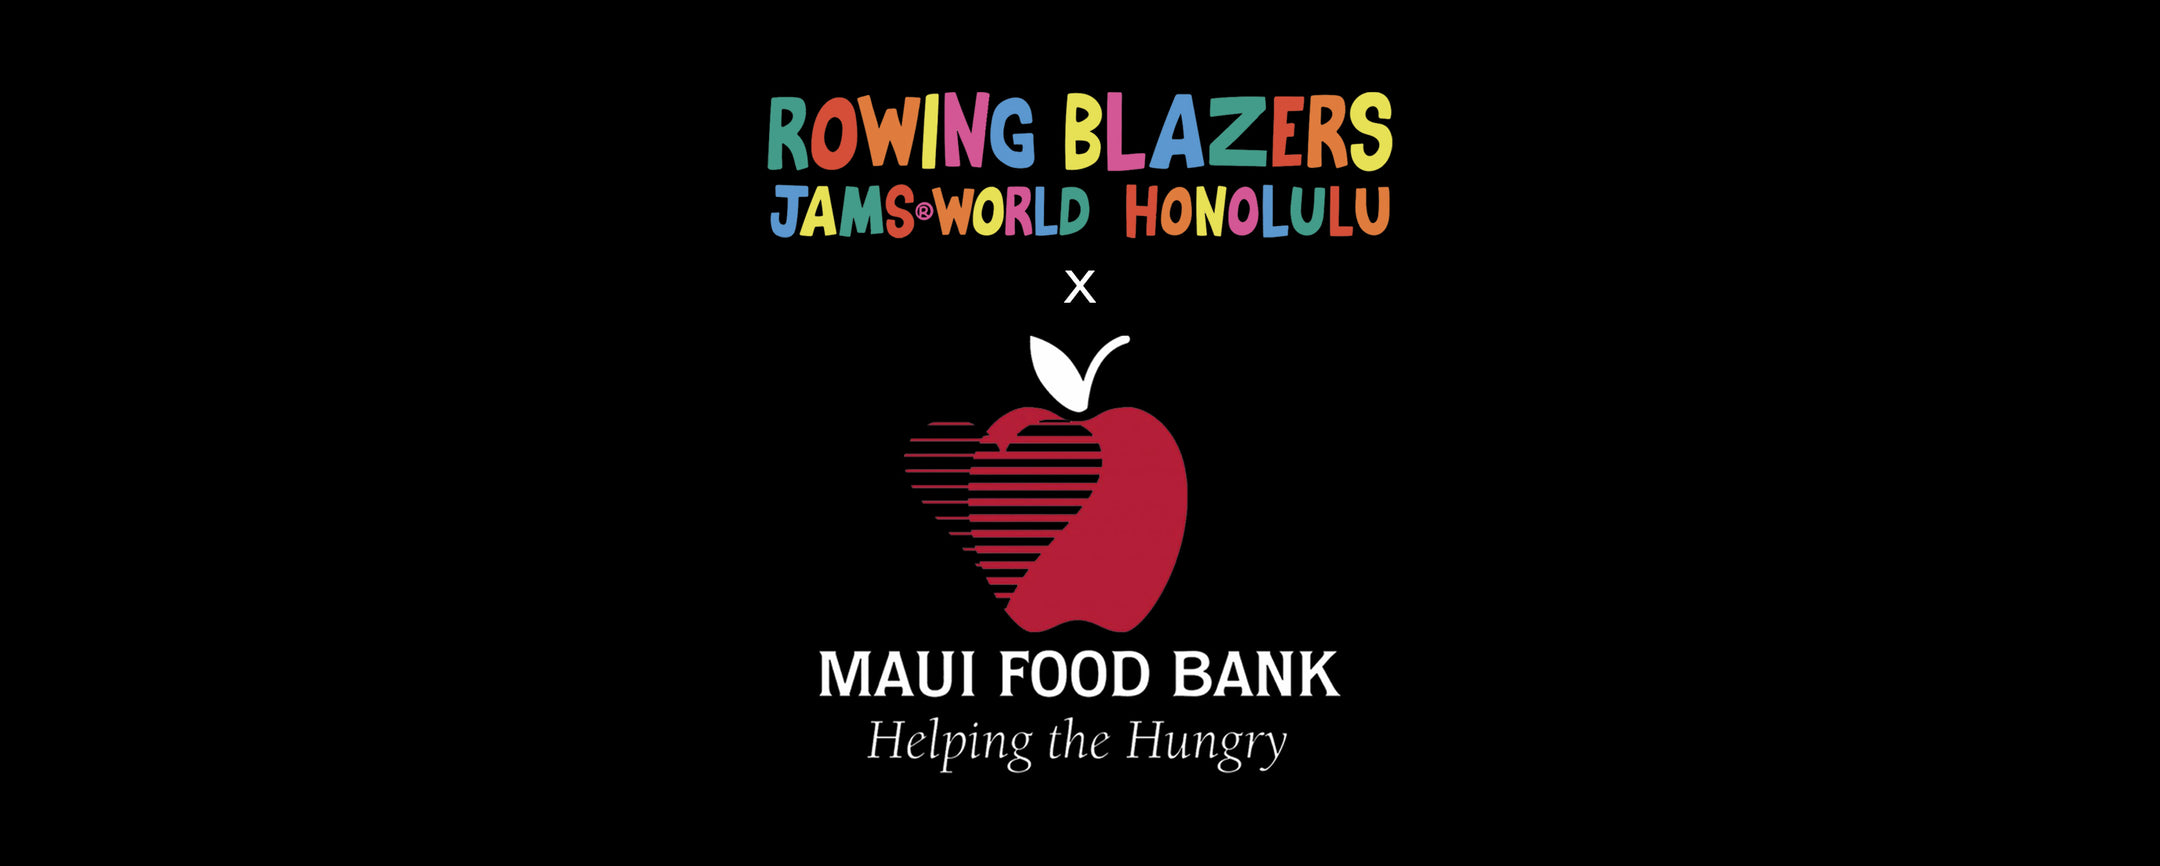 ROWING BLAZERS X JAMS WORLD FOR THE MAUI FOOD BANK